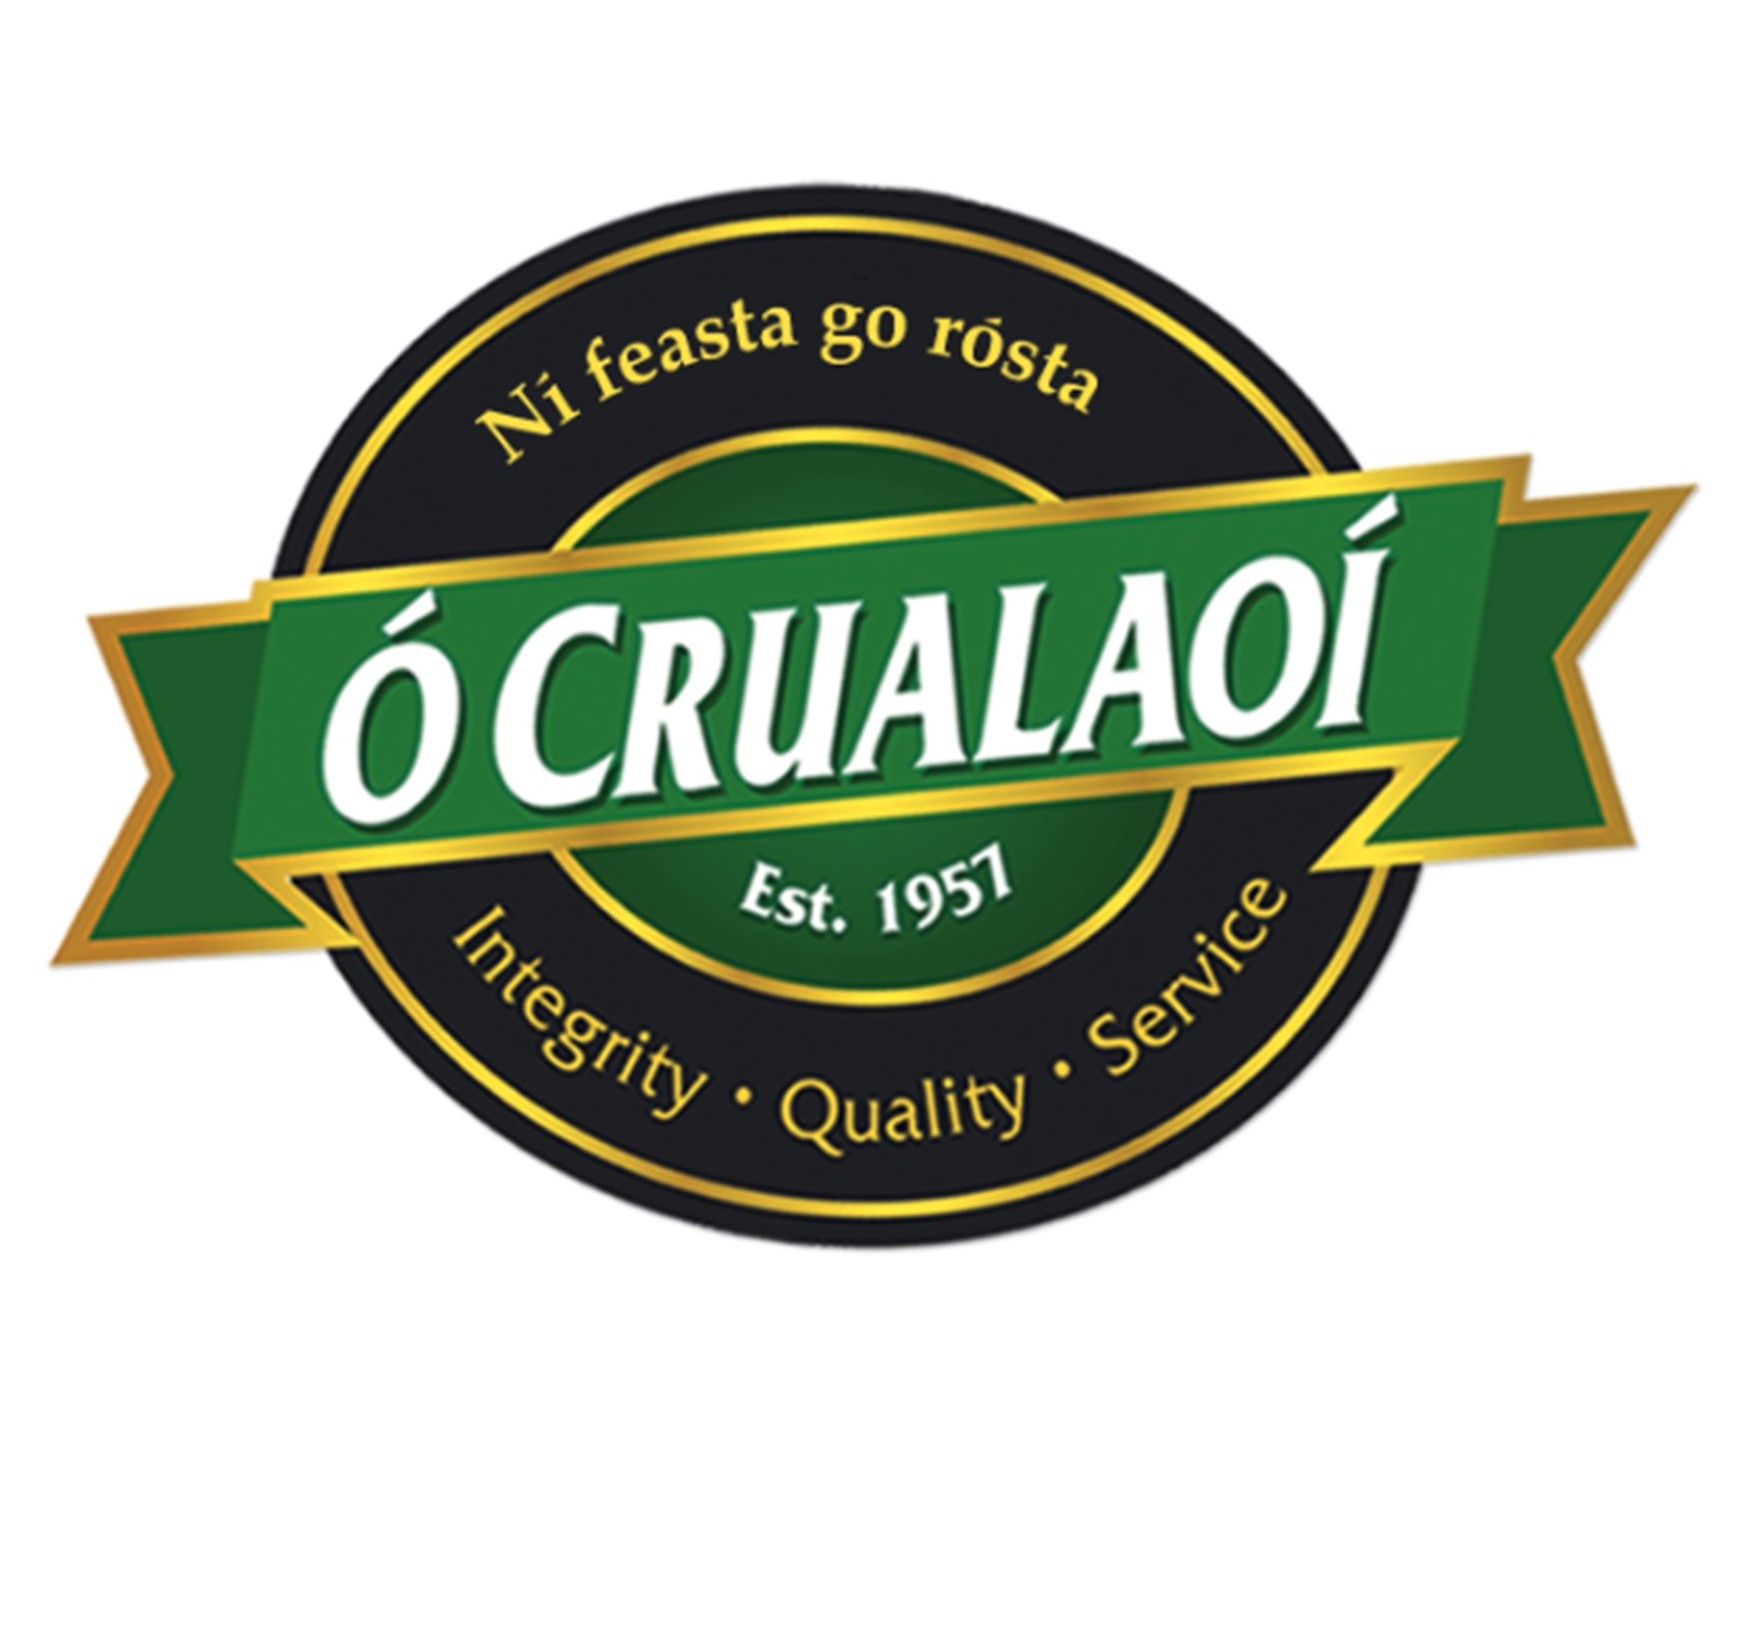 O'Crualaoi Feoil Teo